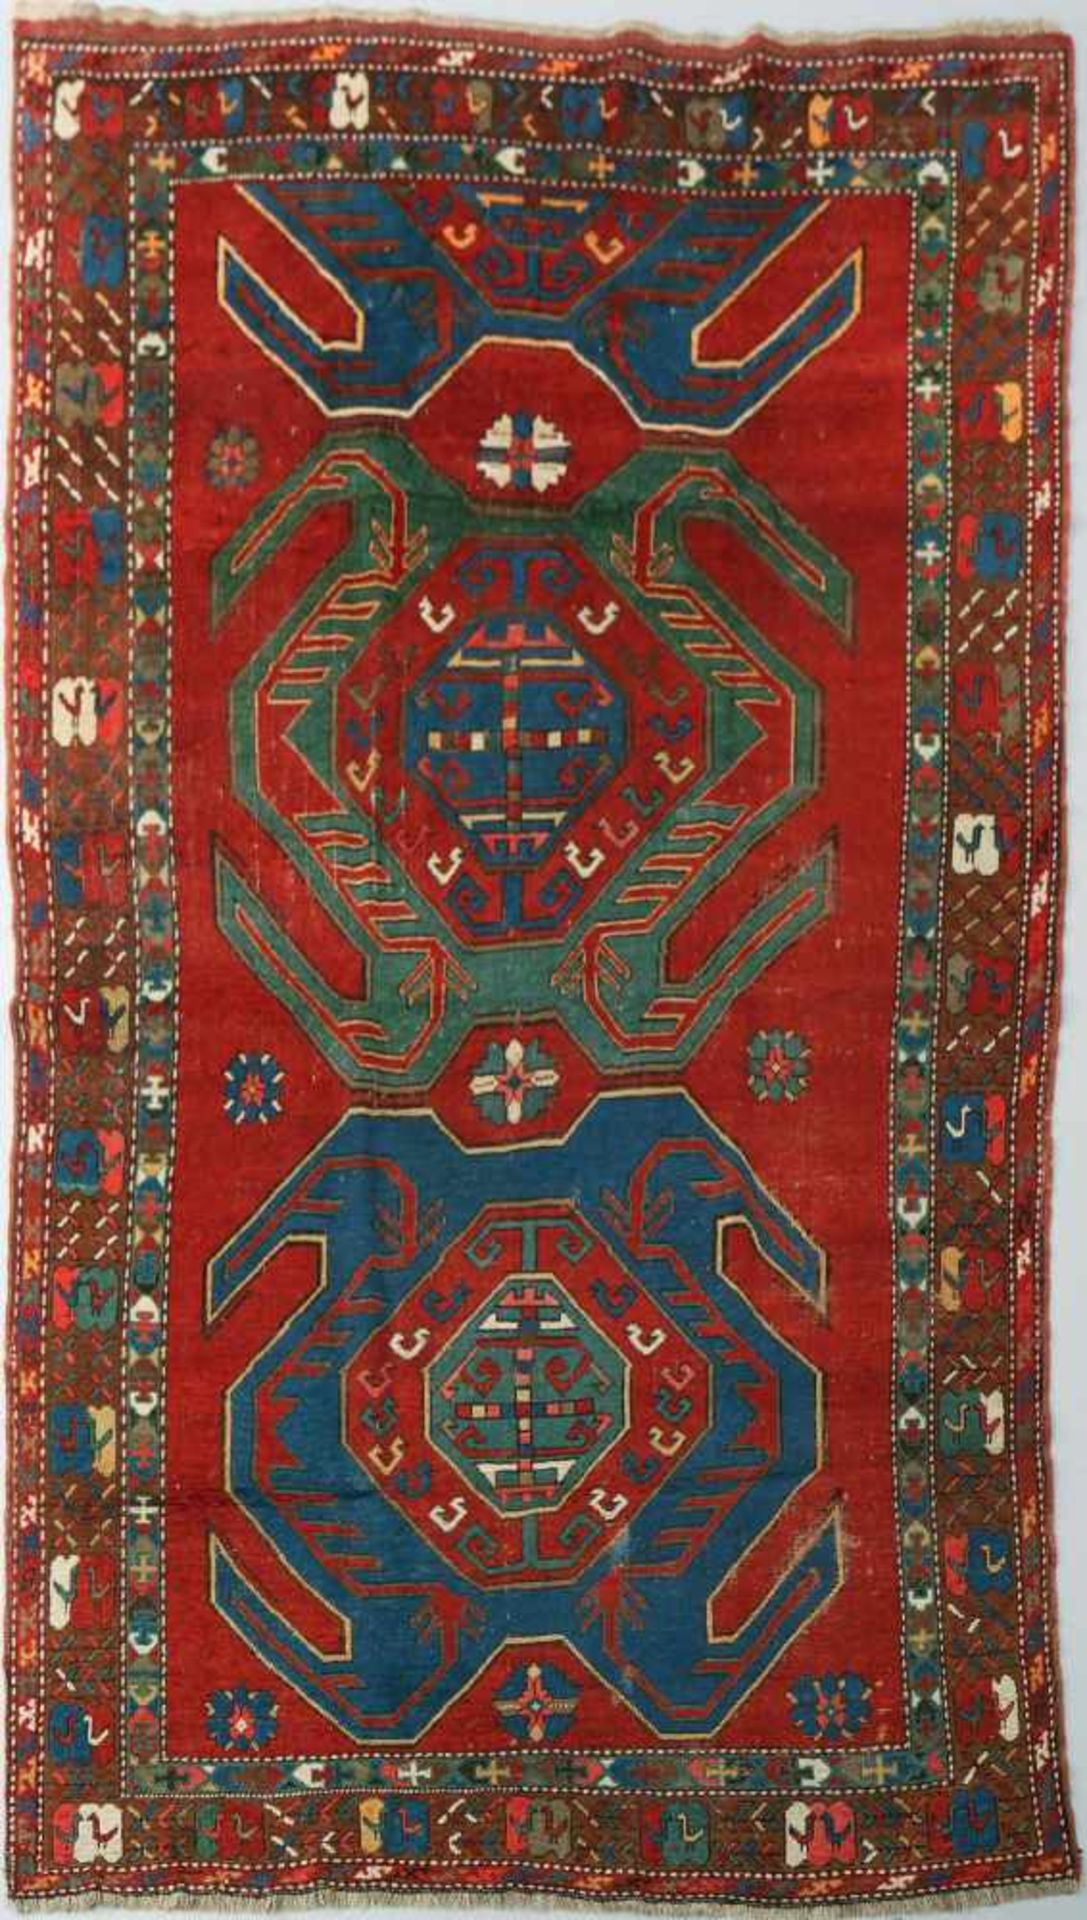 Teppich, Kazak (Farahtscholi)antik (wohl um 1880), ca. 168x282cm, rotgrundig, mit großflächigen